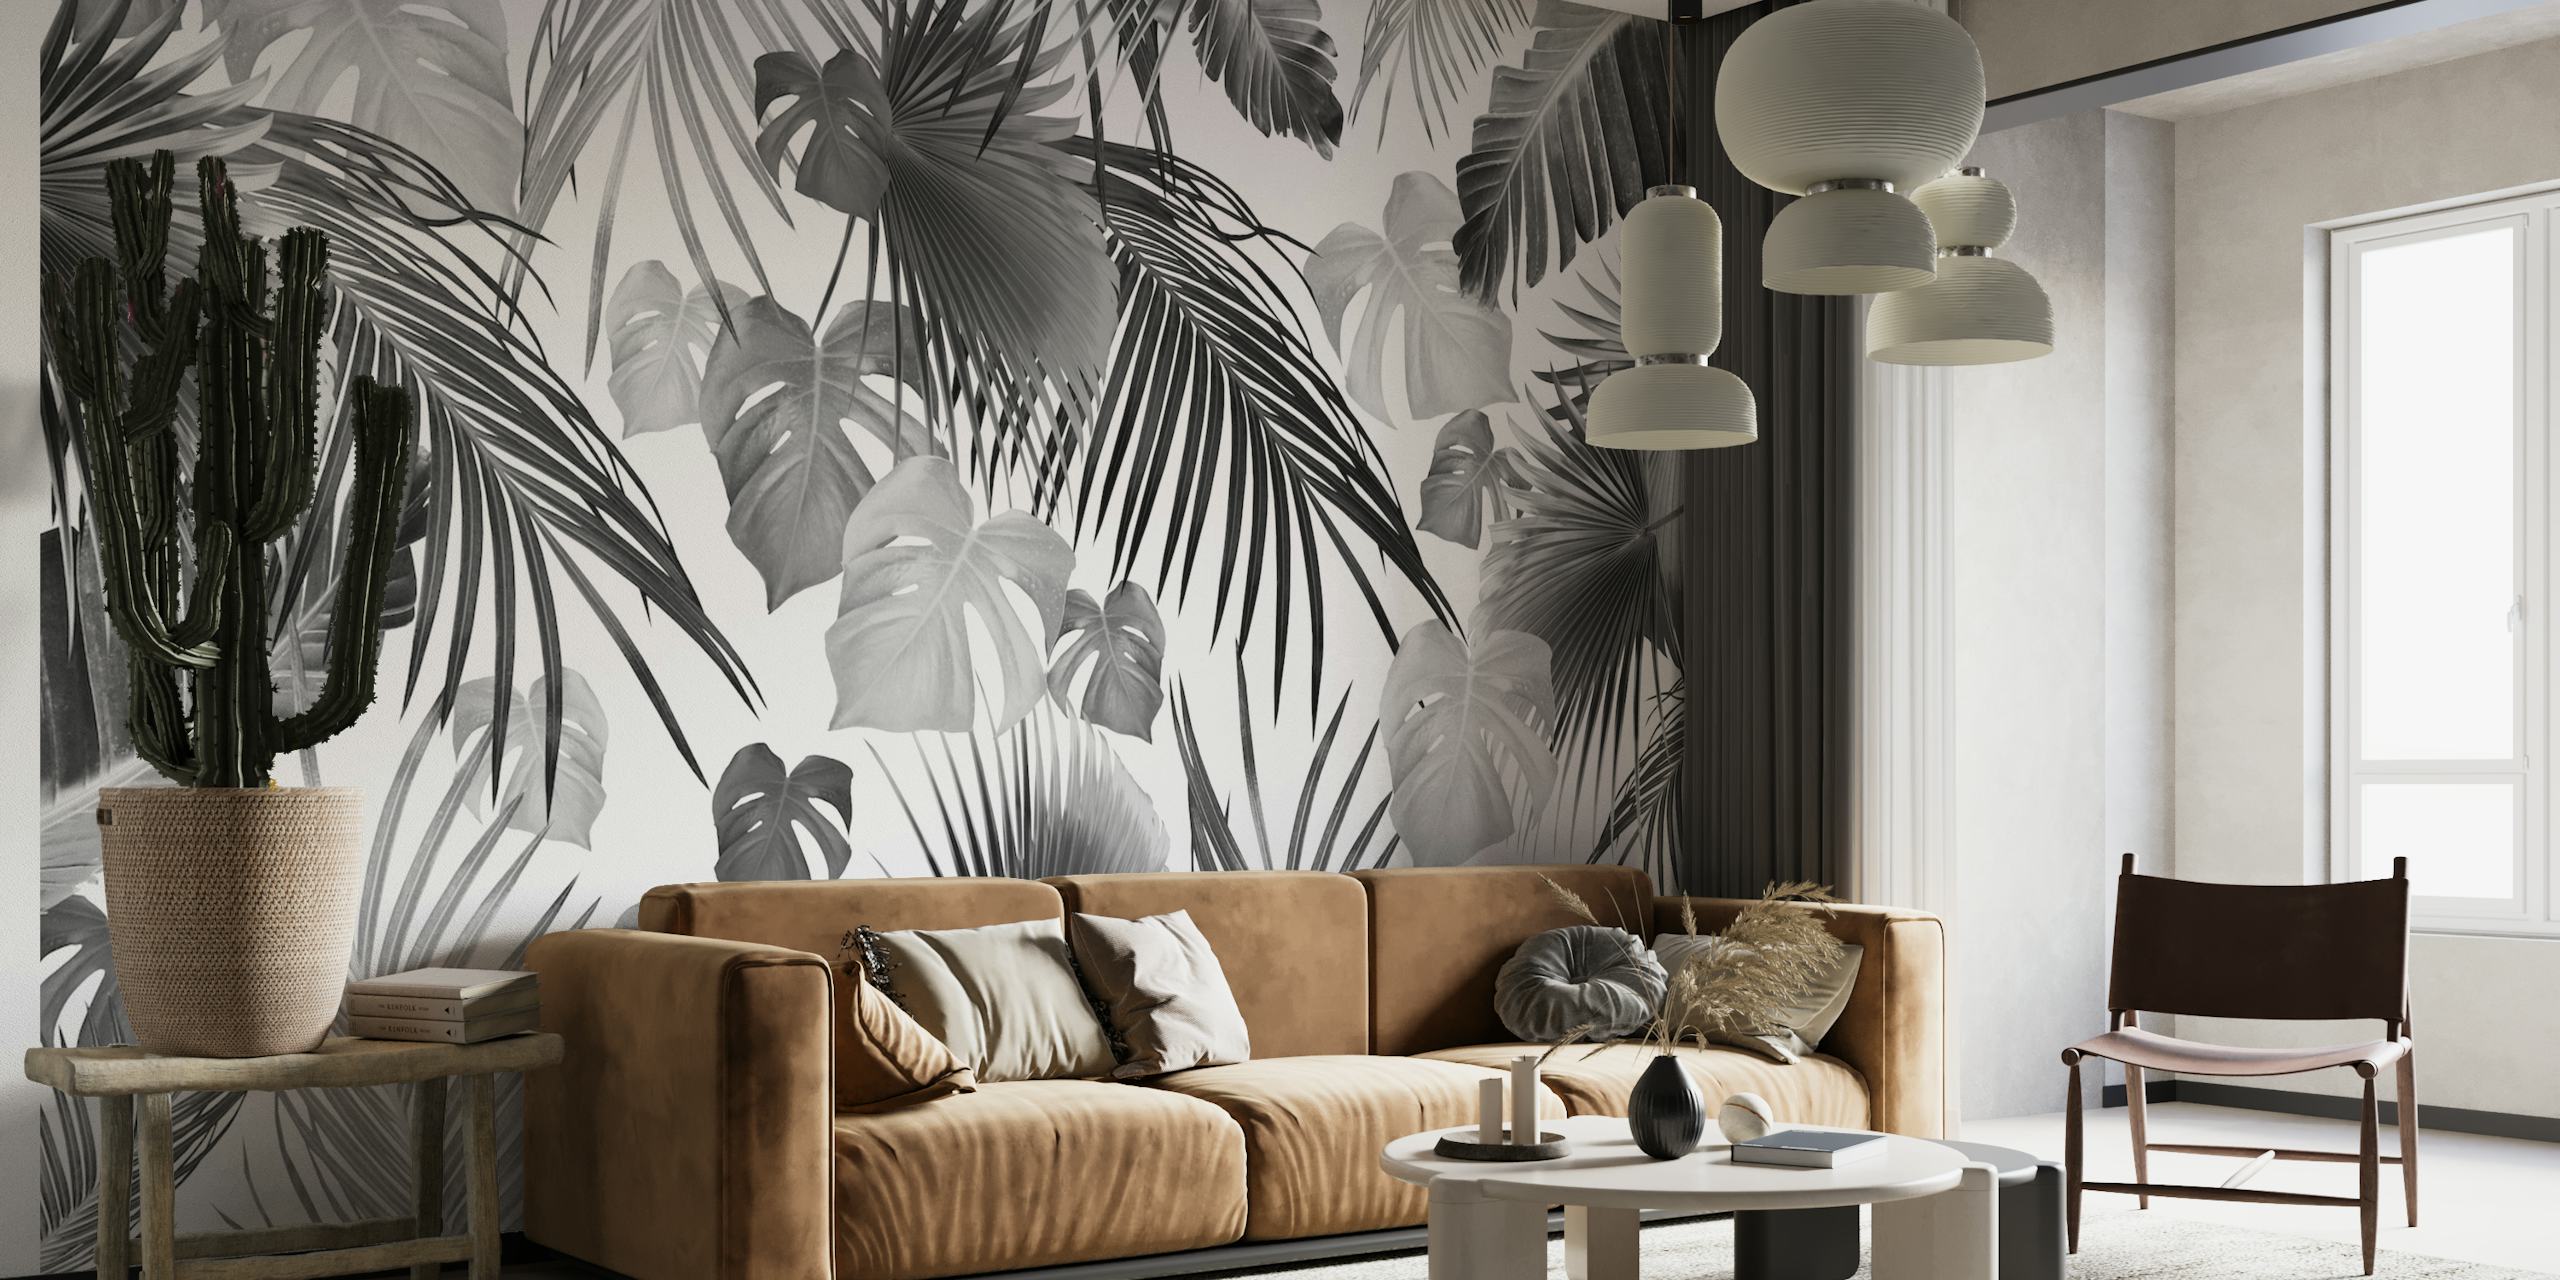 Decorazione murale con foglie della giungla tropicale in bianco e nero